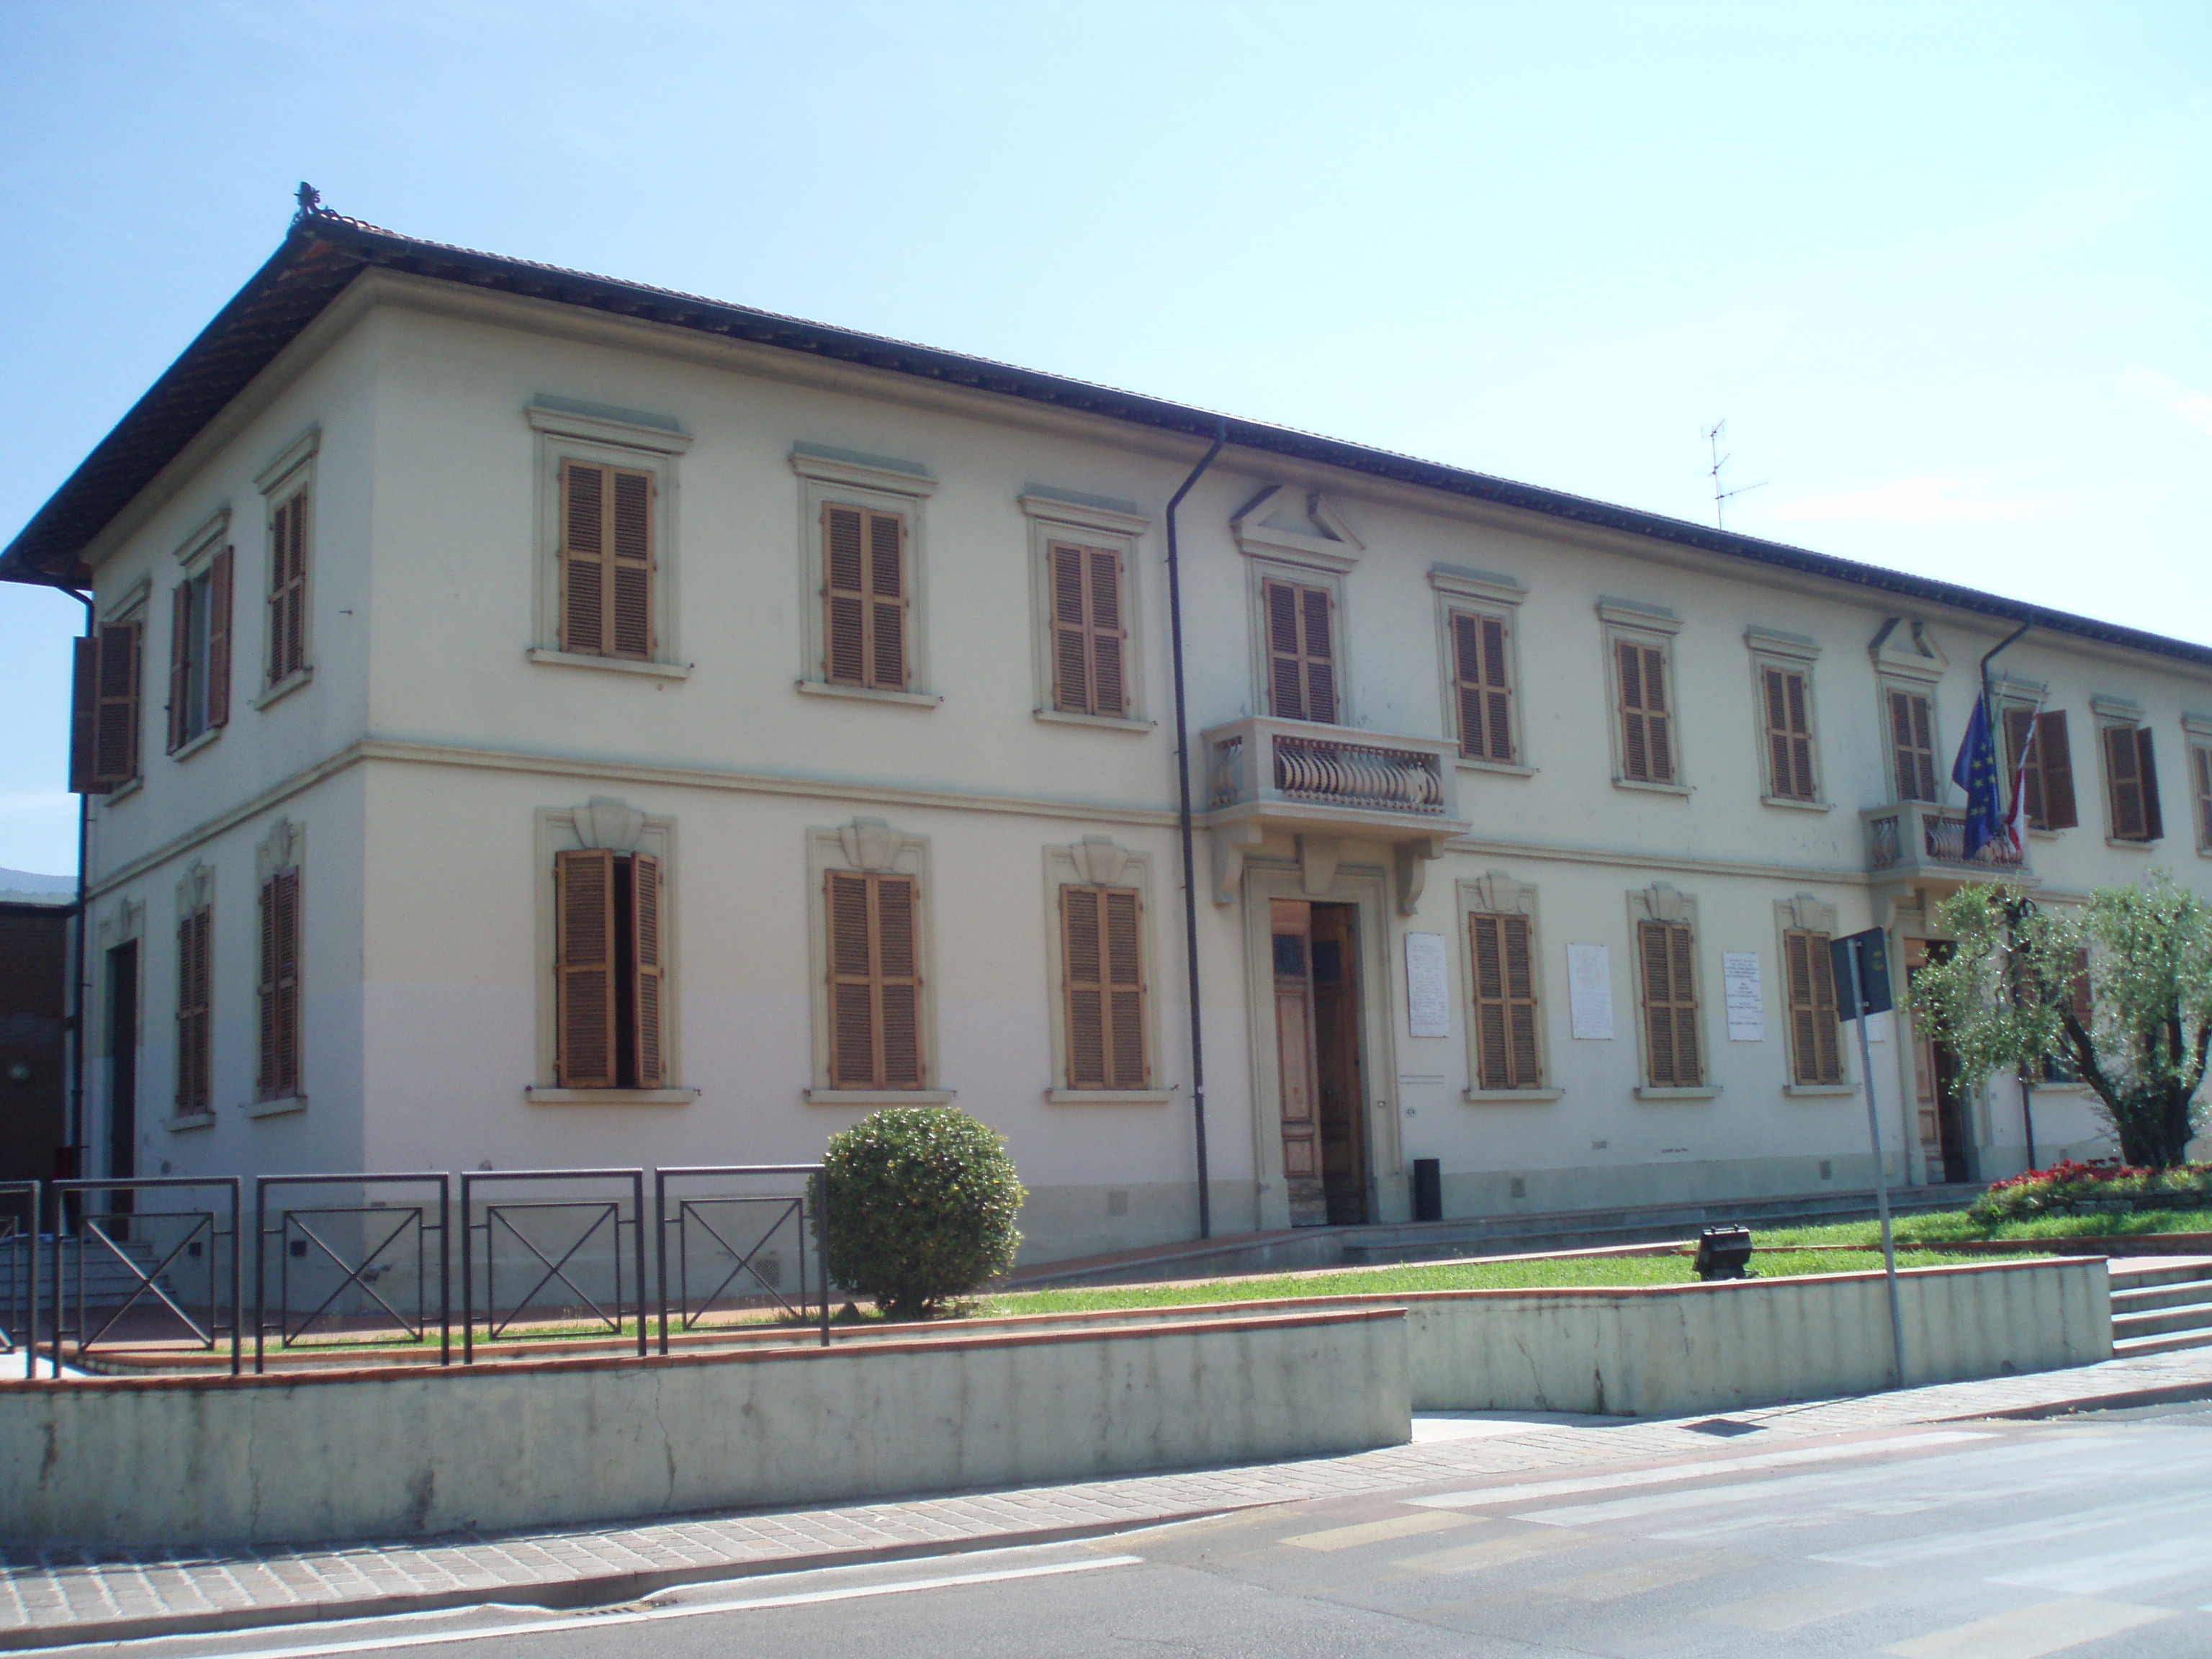 Palazzo comunale (municipio) - Montemurlo (PO) 